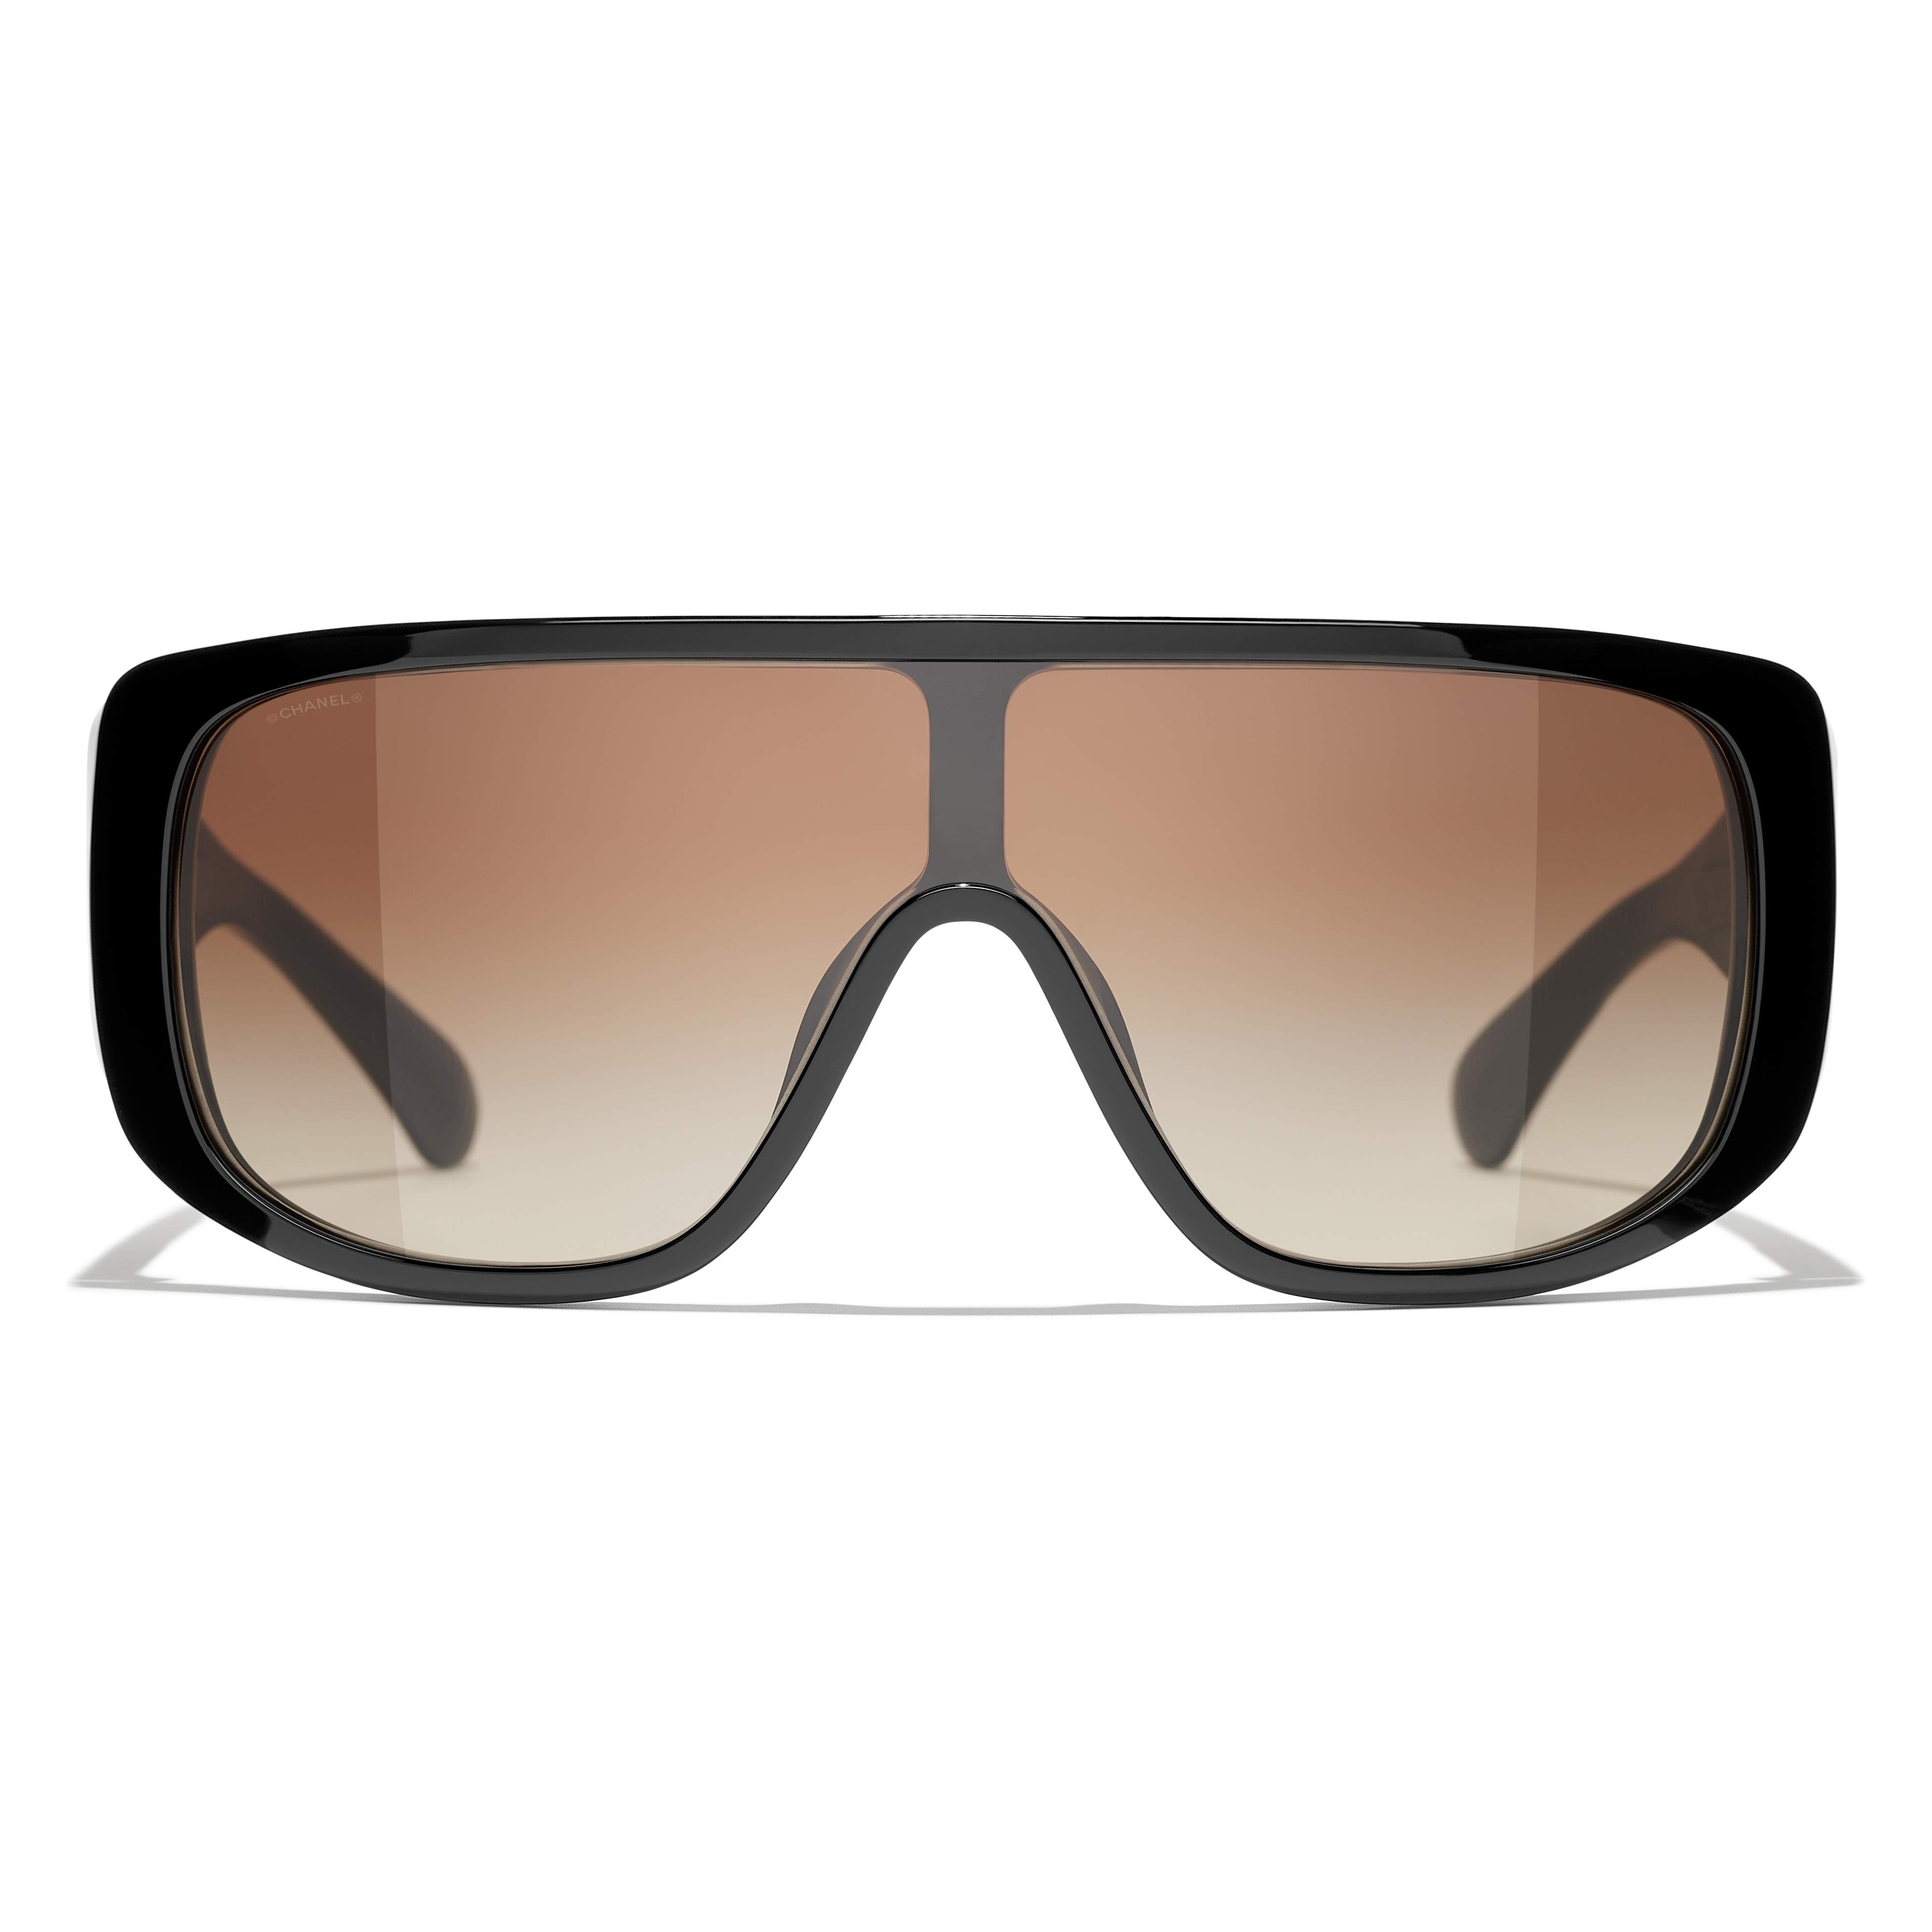 Sunglasses CHANEL CH5495 C622/S5 Black in stock, Price 316,67 €